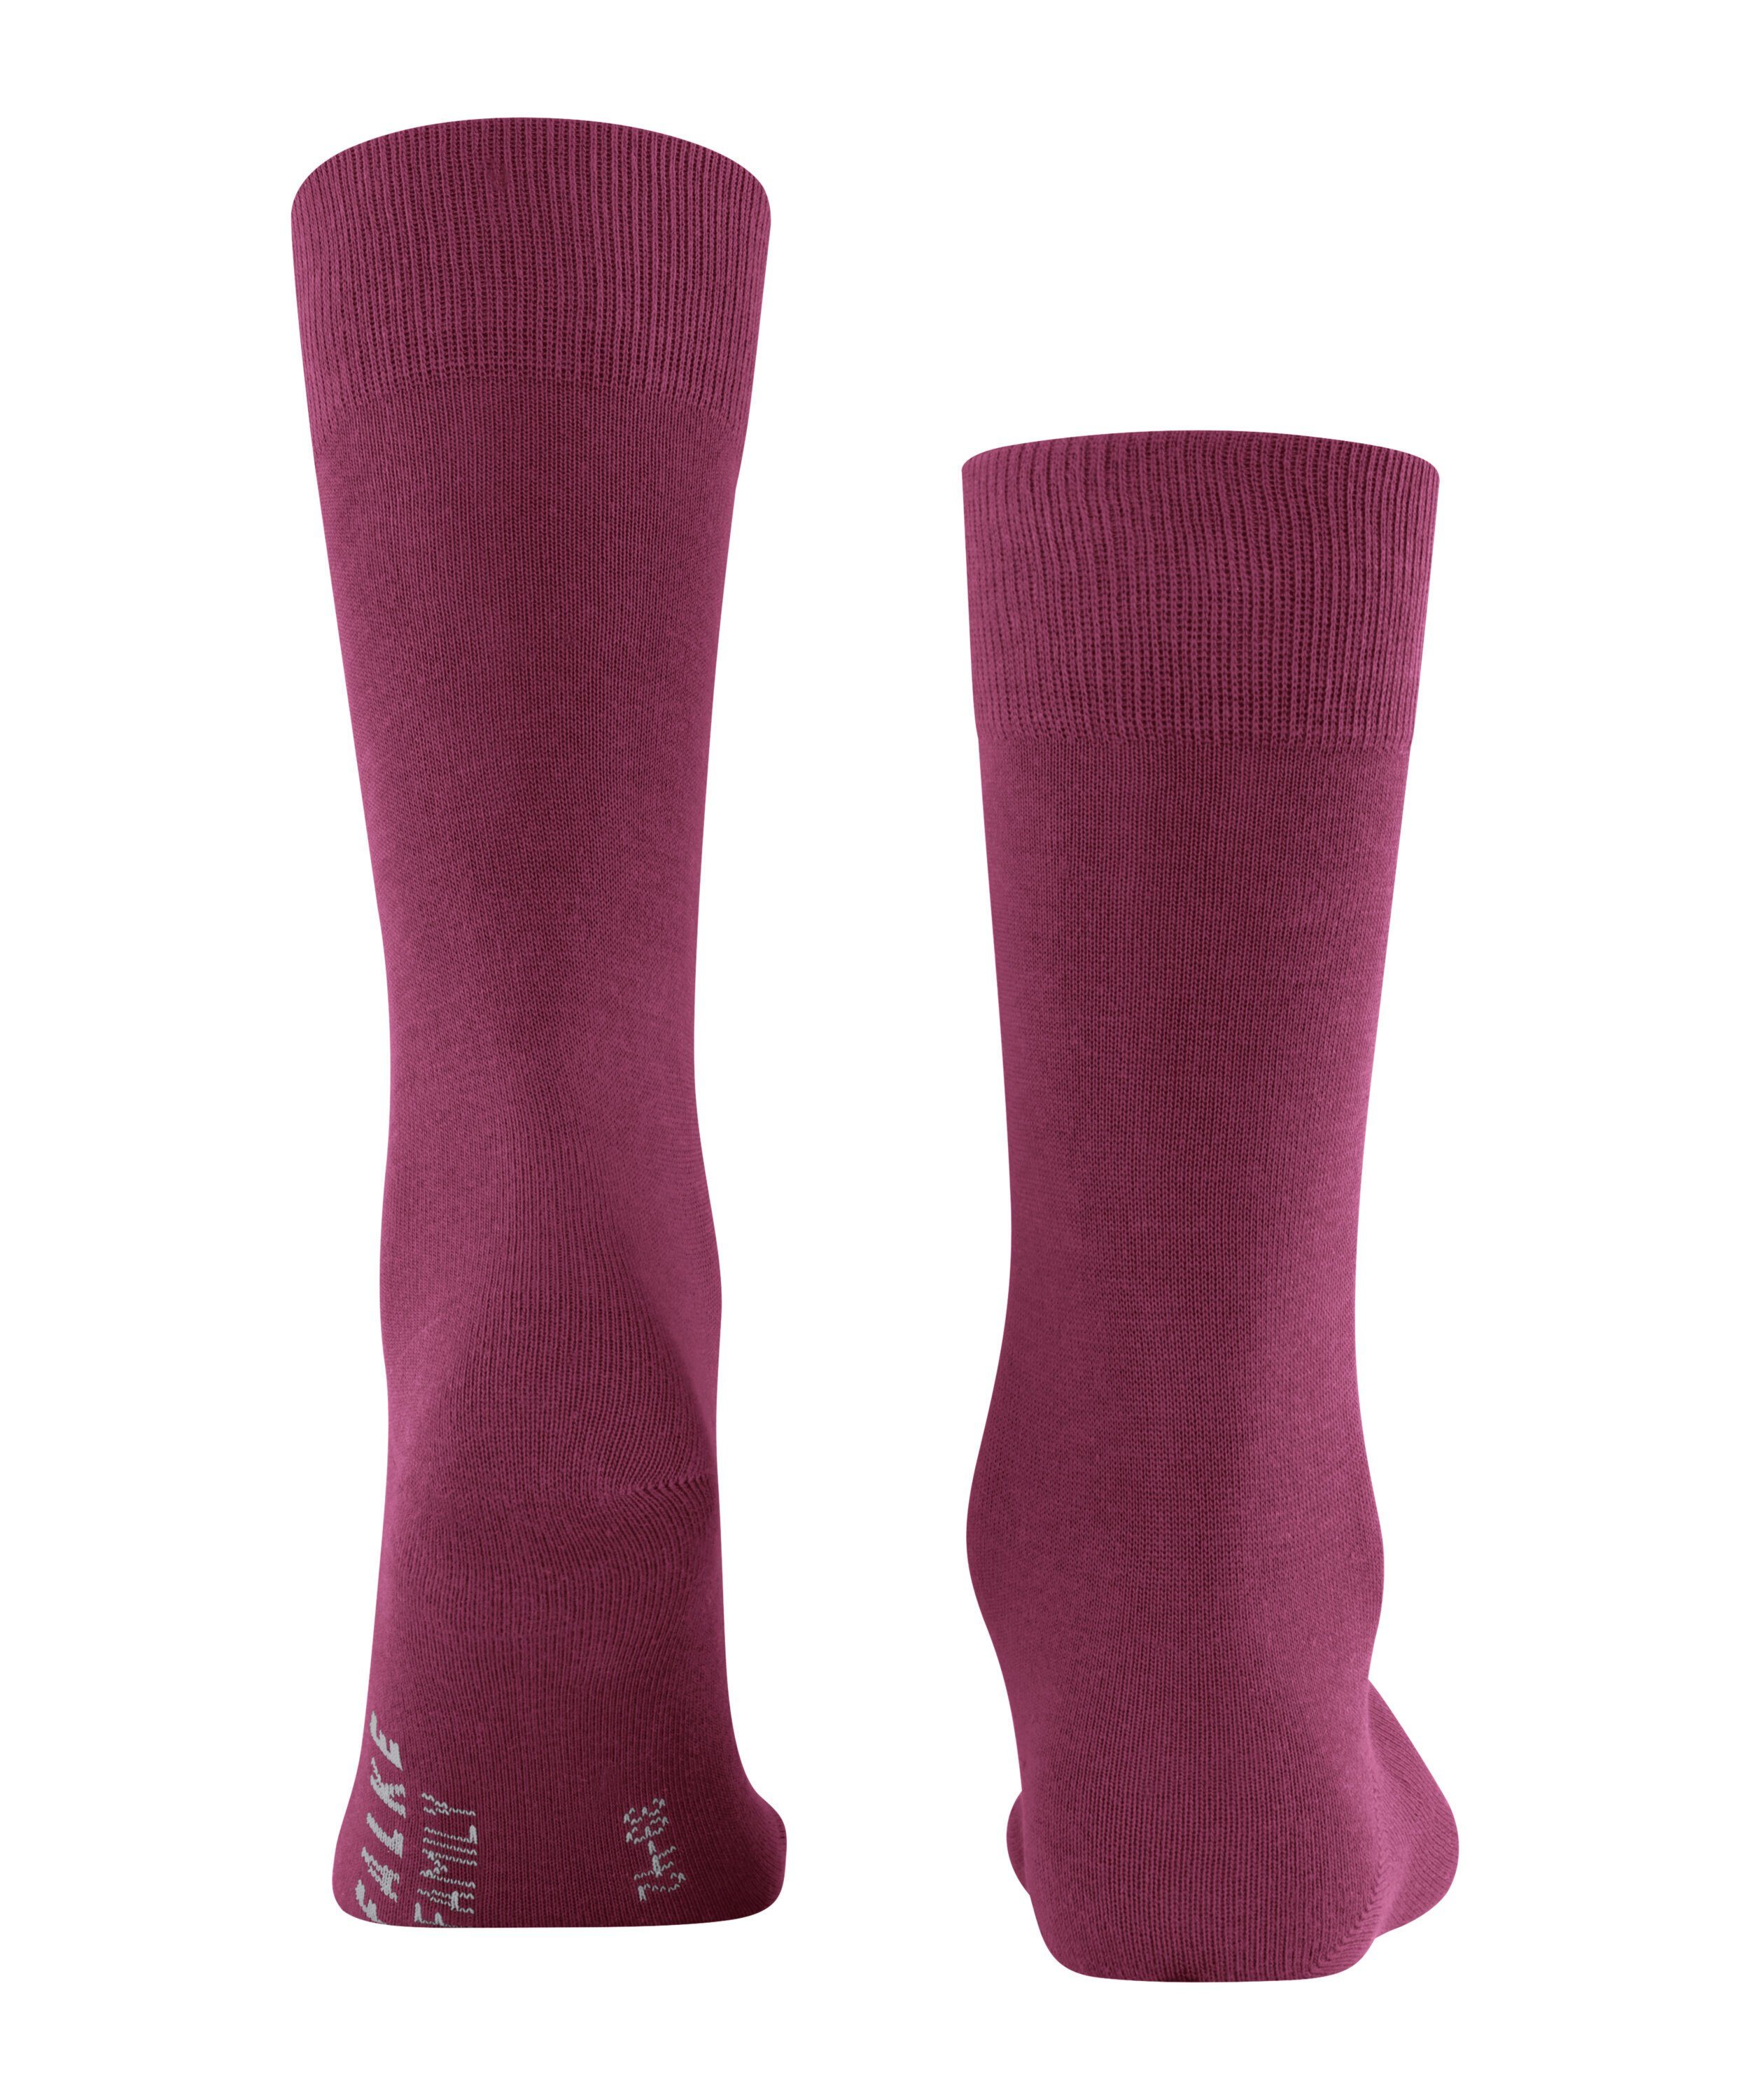 plum (8236) Socken (1-Paar) Family FALKE red